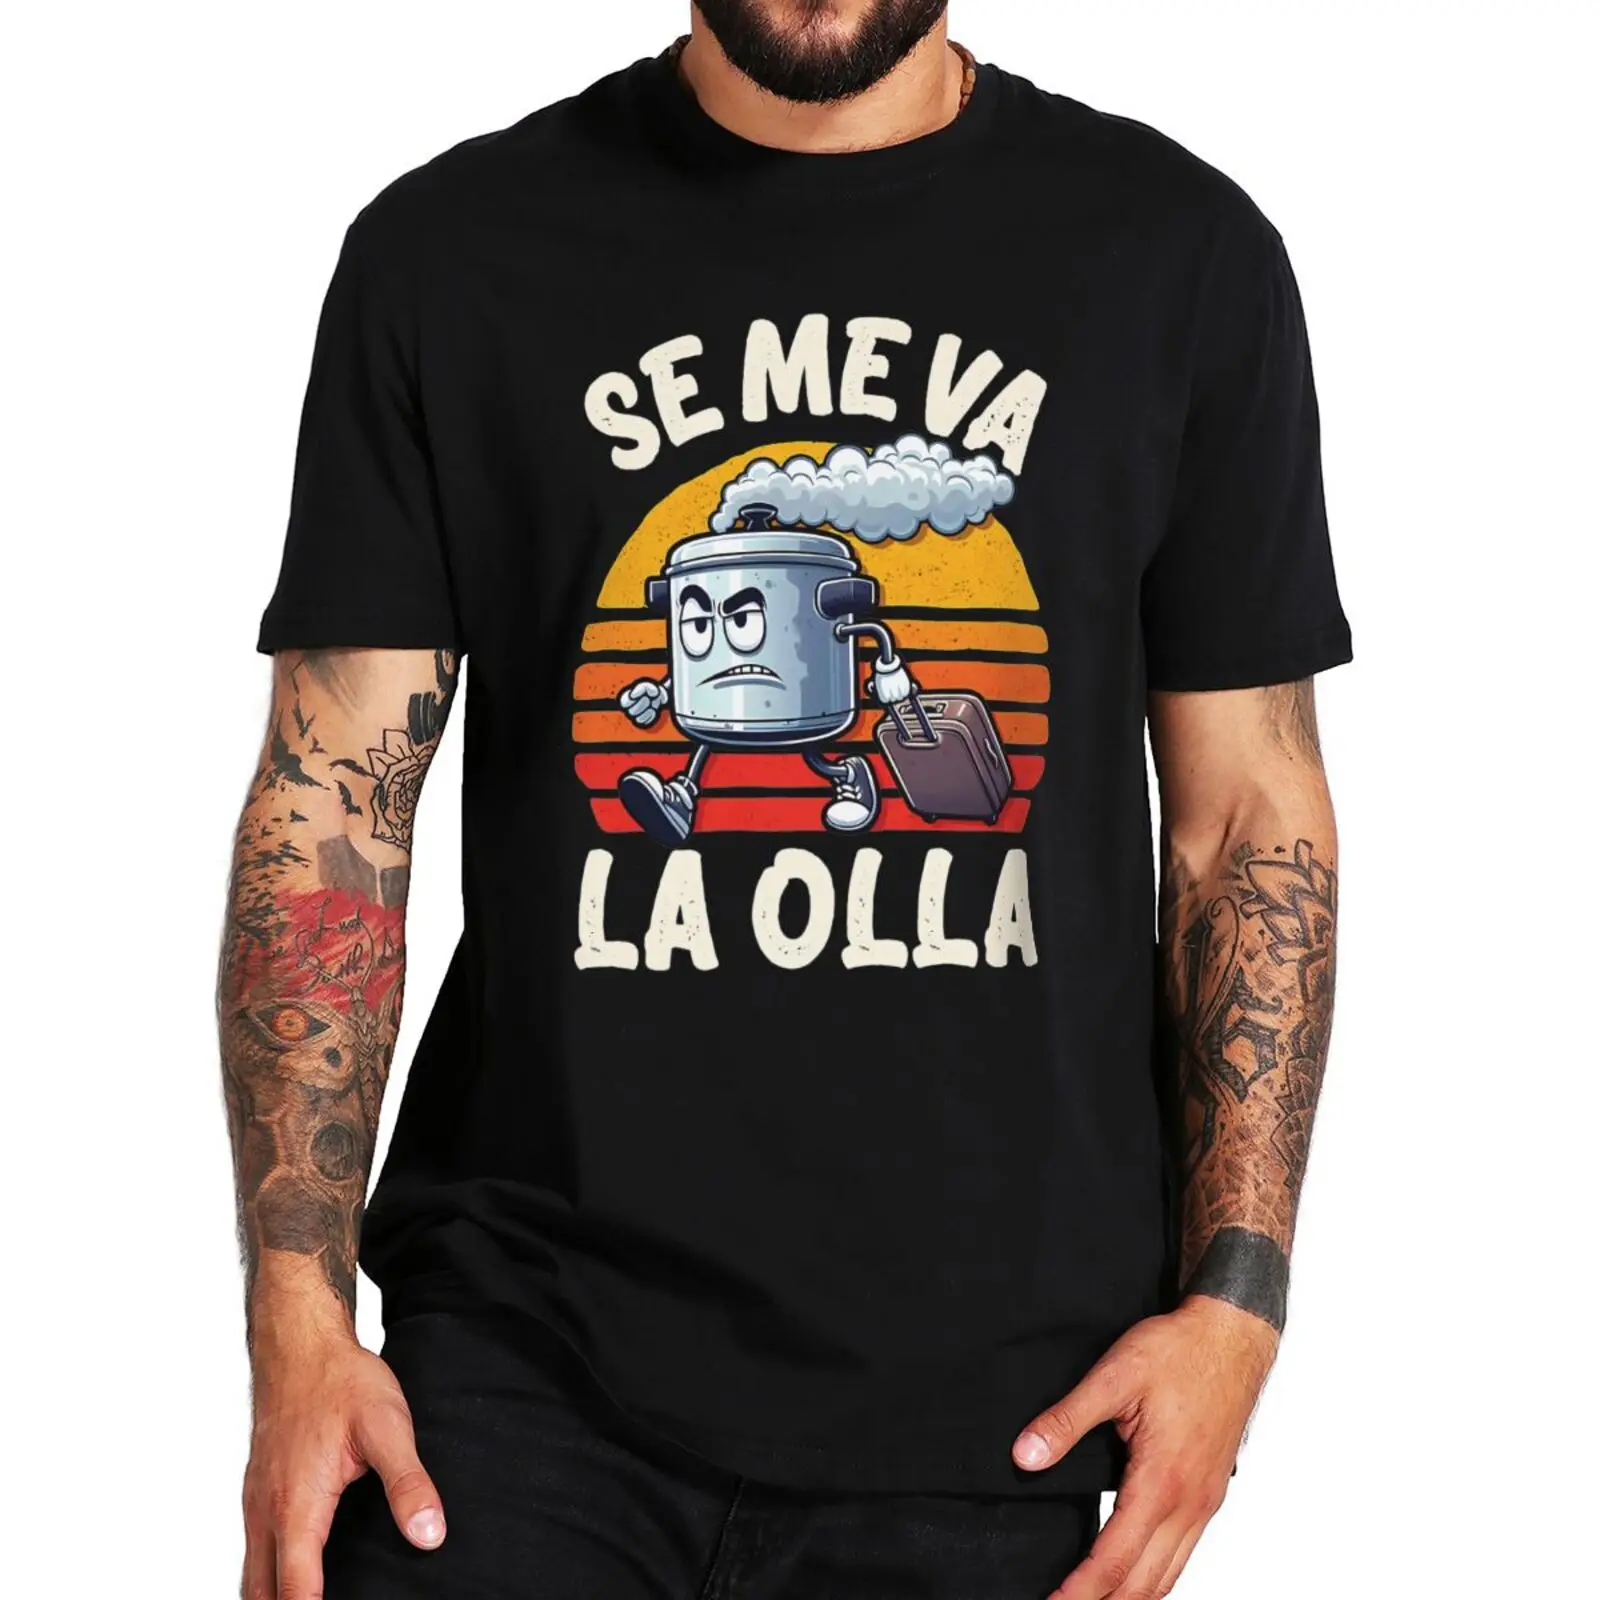 

Забавная Винтажная футболка с надписью «I'm Lost My Mind», с шутливым испанским юмором, Slang, для мужчин и женщин, 100% хлопок, мягкая футболка унисекс европейского размера, топы